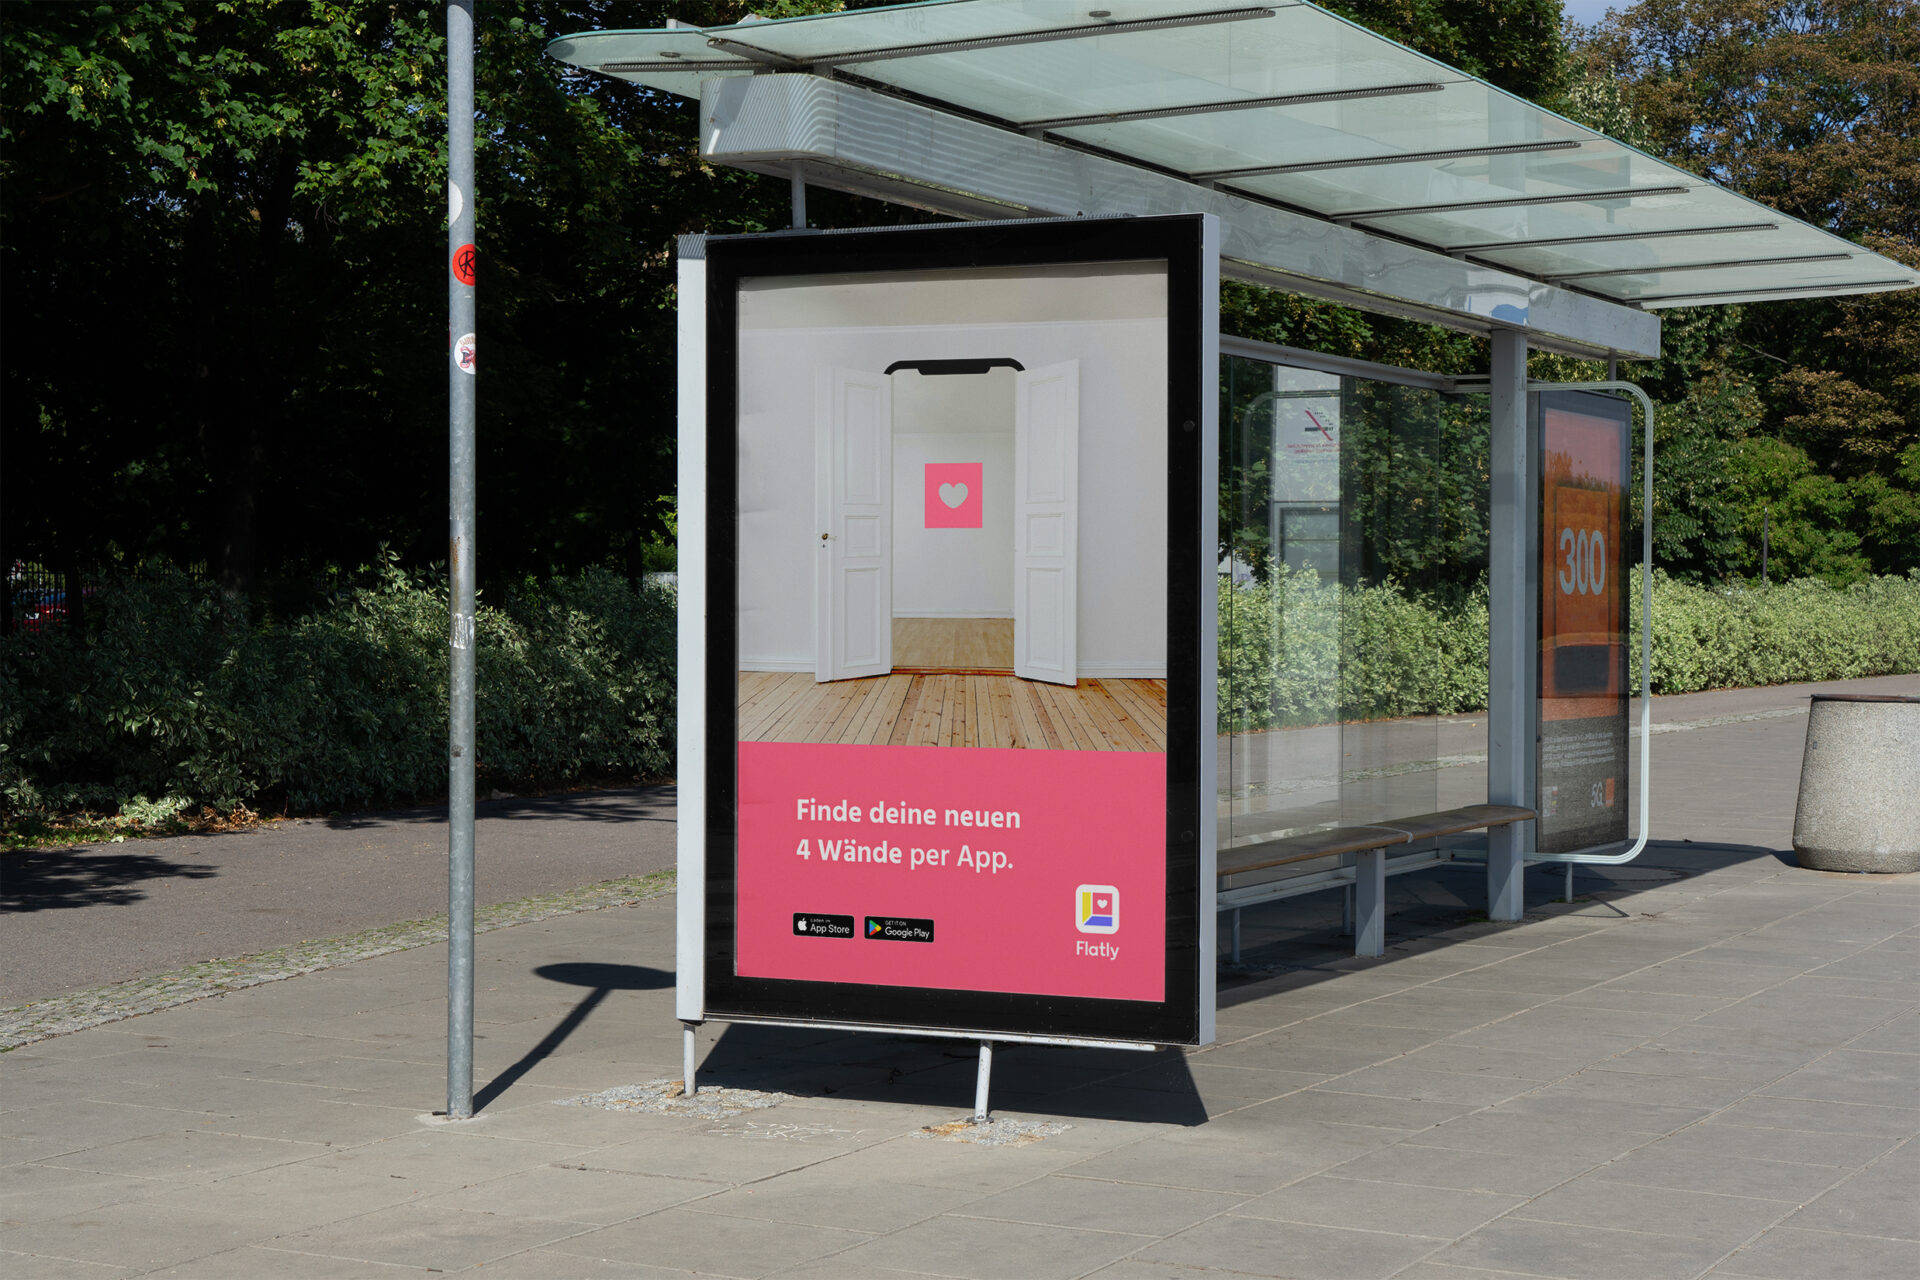 Plakatwerbung mit der Aufforderungen die Flatly-App herunterzuladen. Das Plakat ist an einer Bushaltestelle in Form eines Citylights montiert.